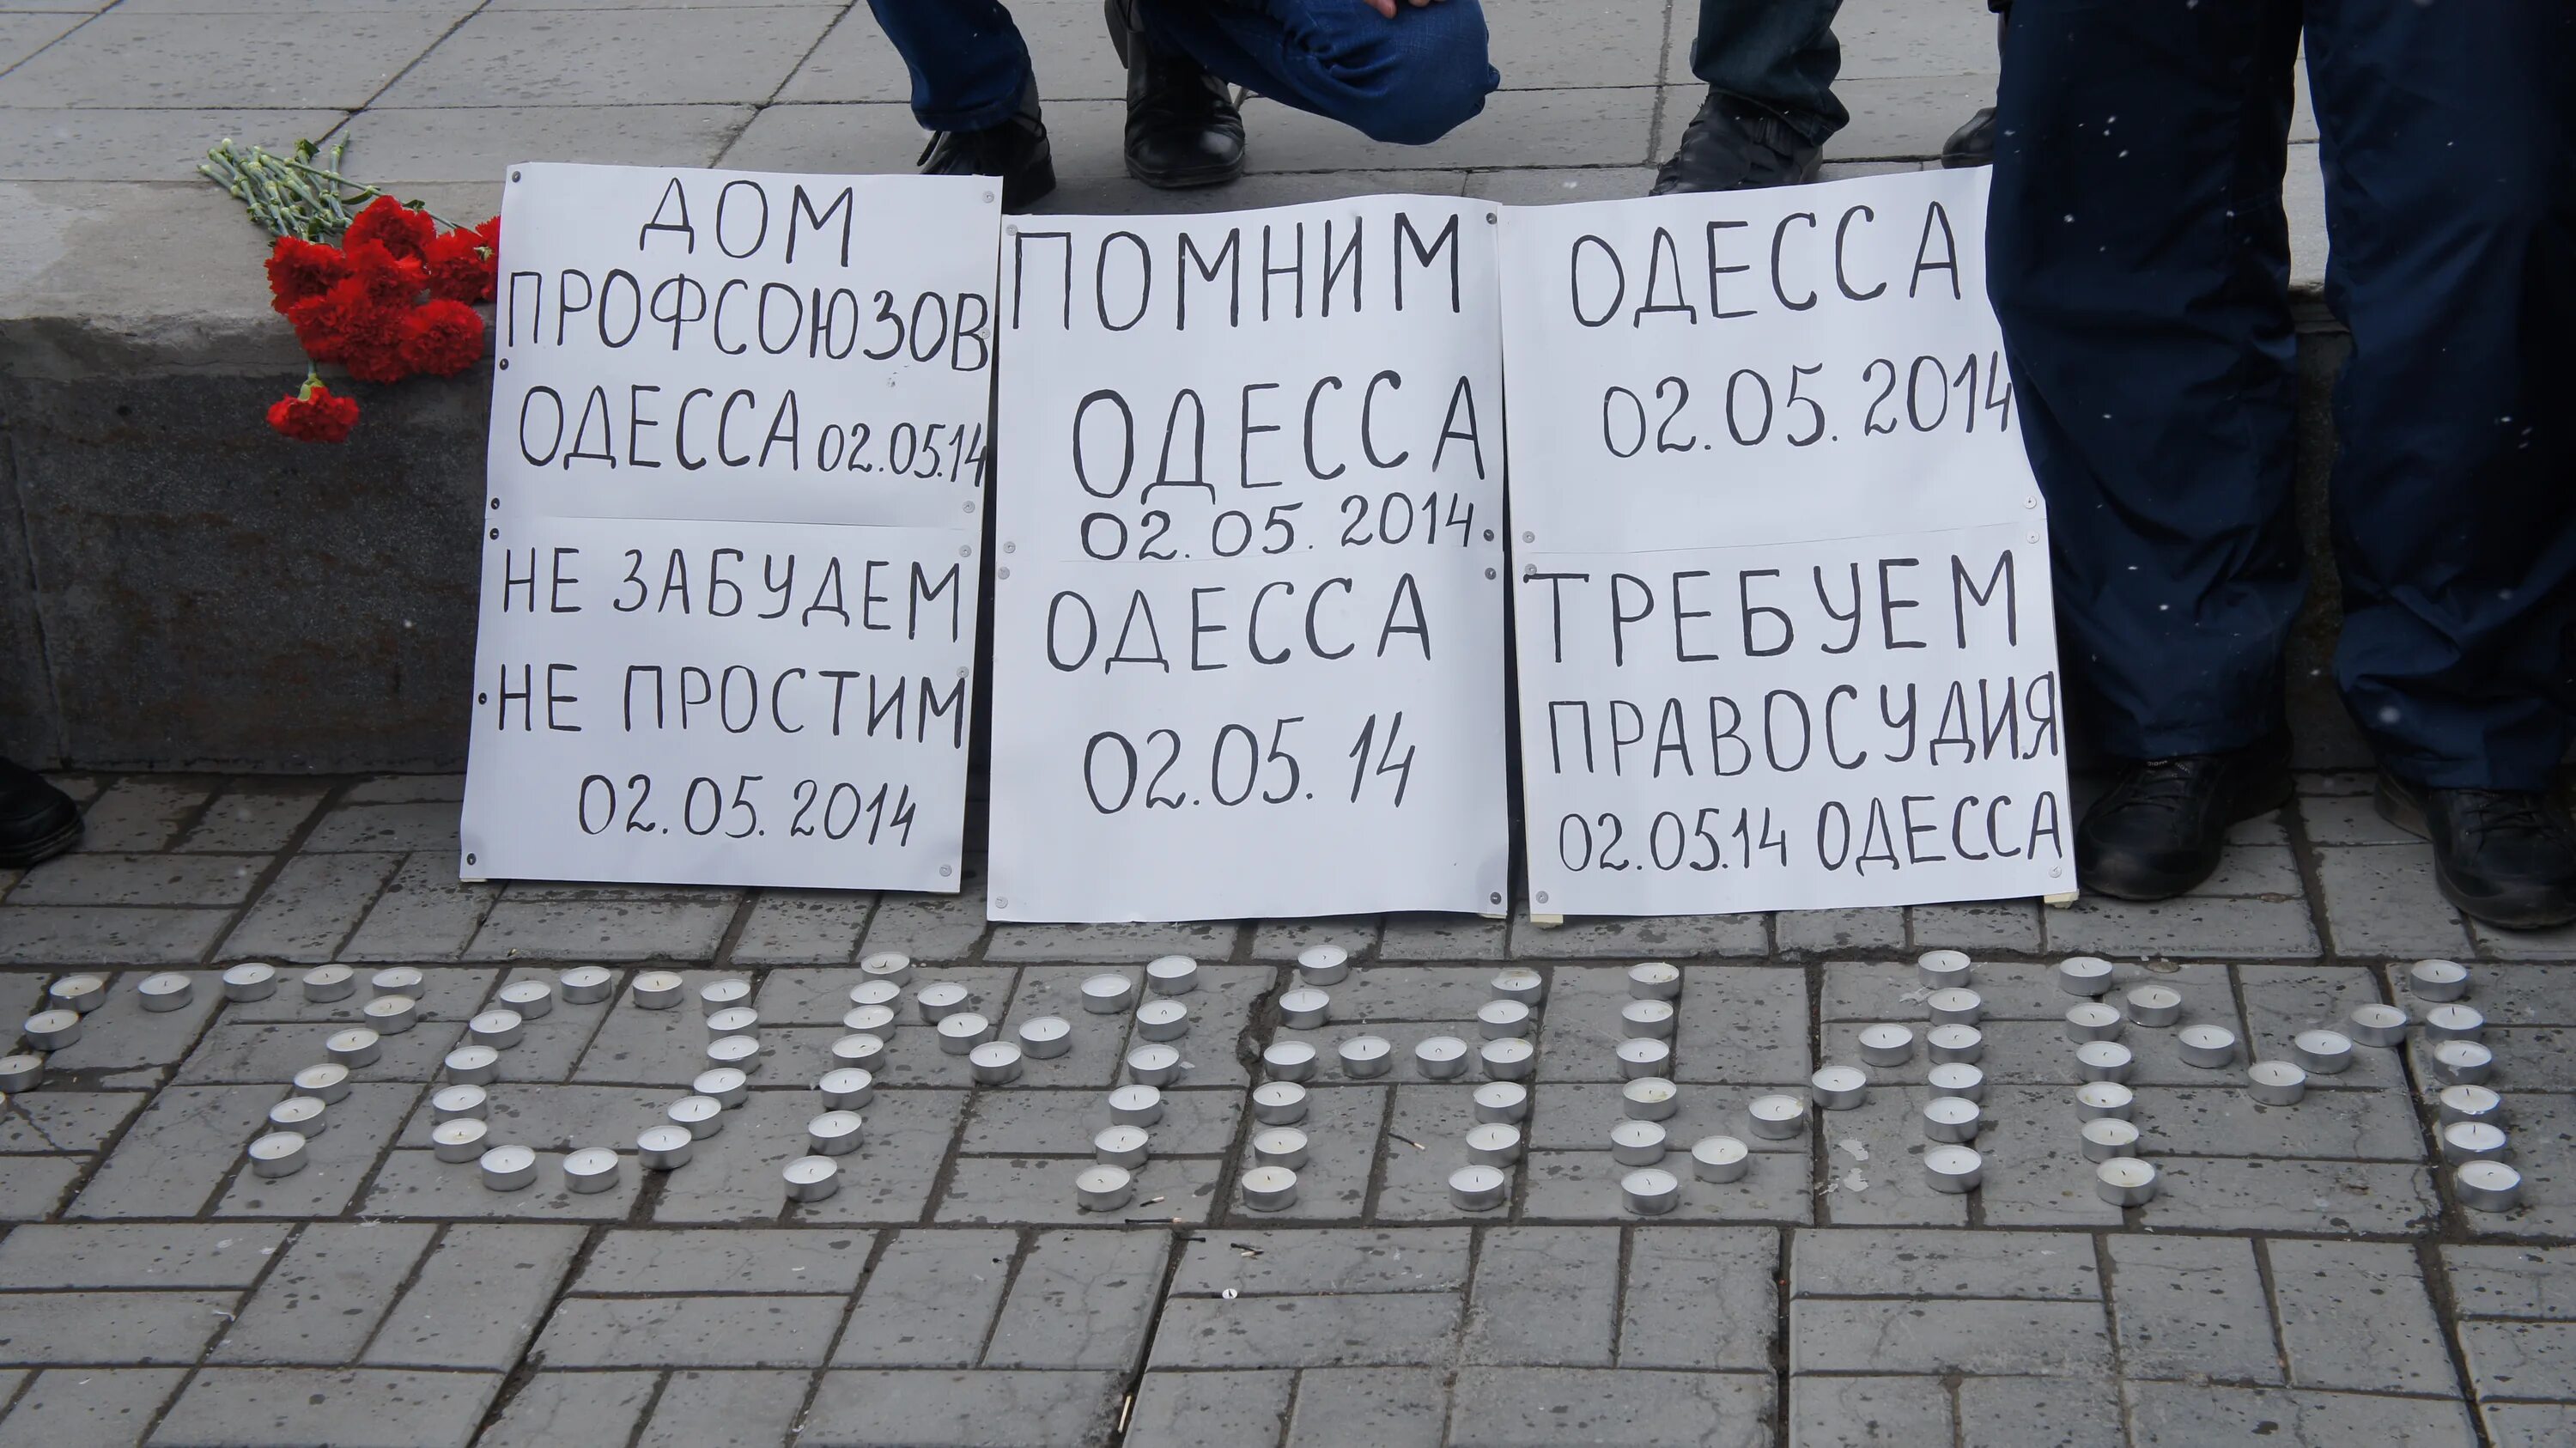 Память 2 мая. Одесса 2 мая дом профсоюзов. Одесса 2 мая 2014 помним.